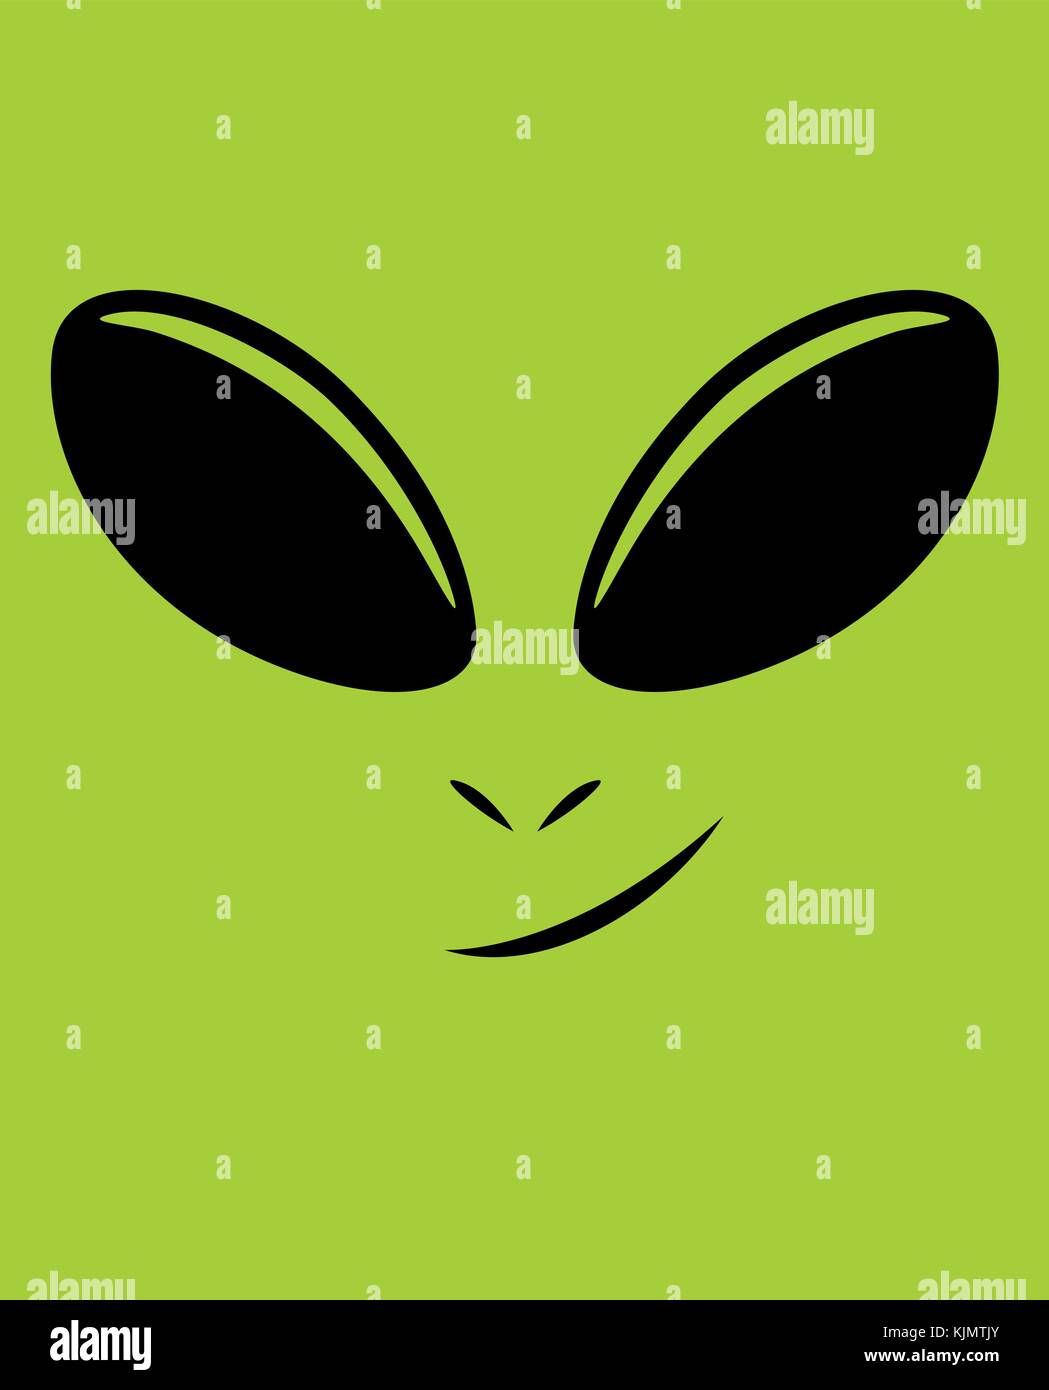 Vector cartoon illustration of green alien face. Stock Vector